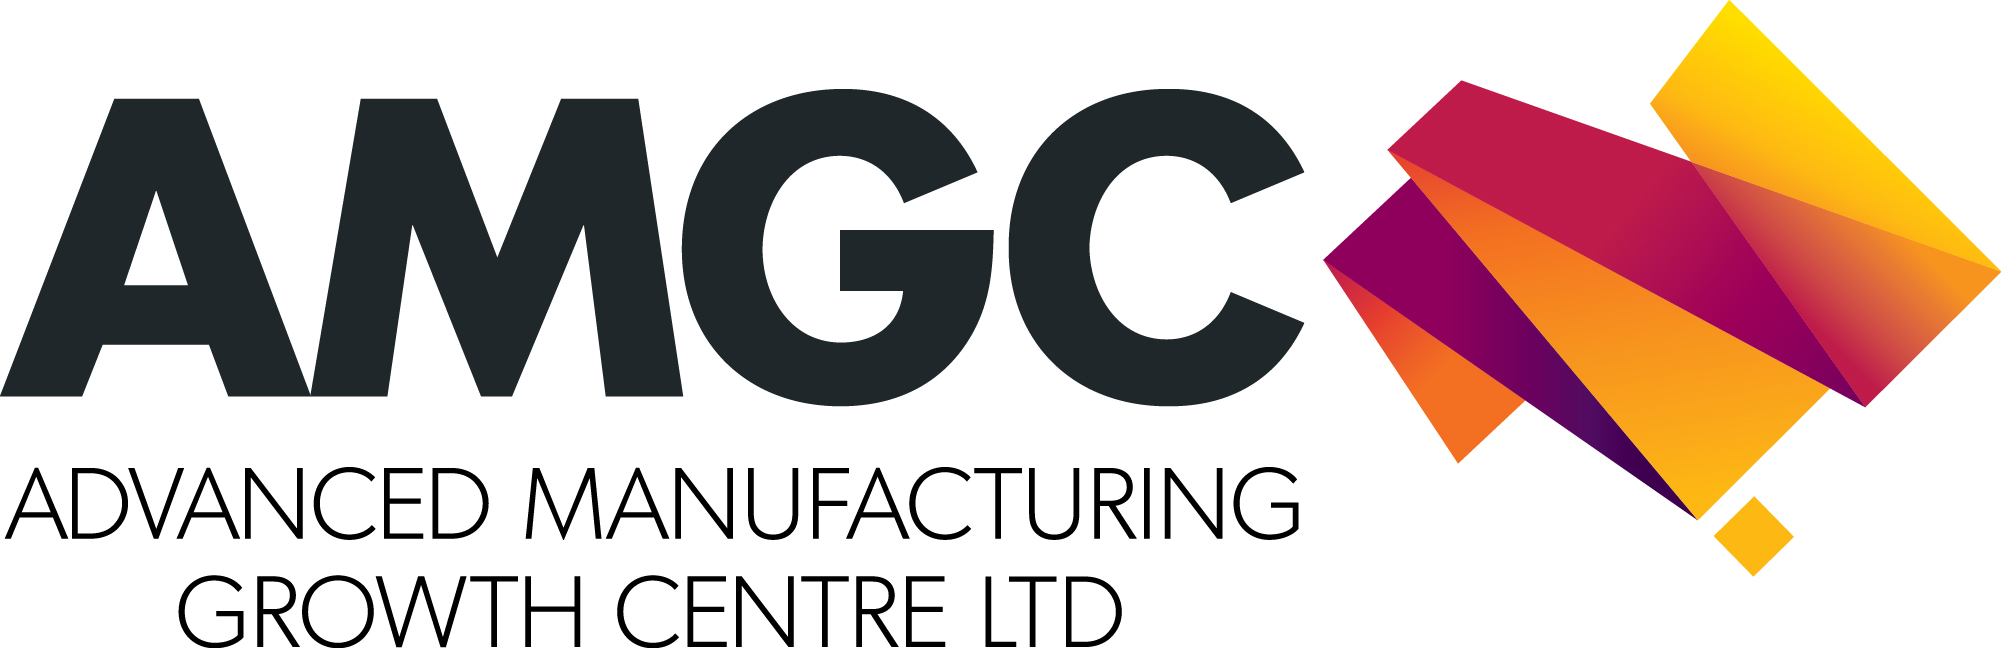 Logo AMGC logo